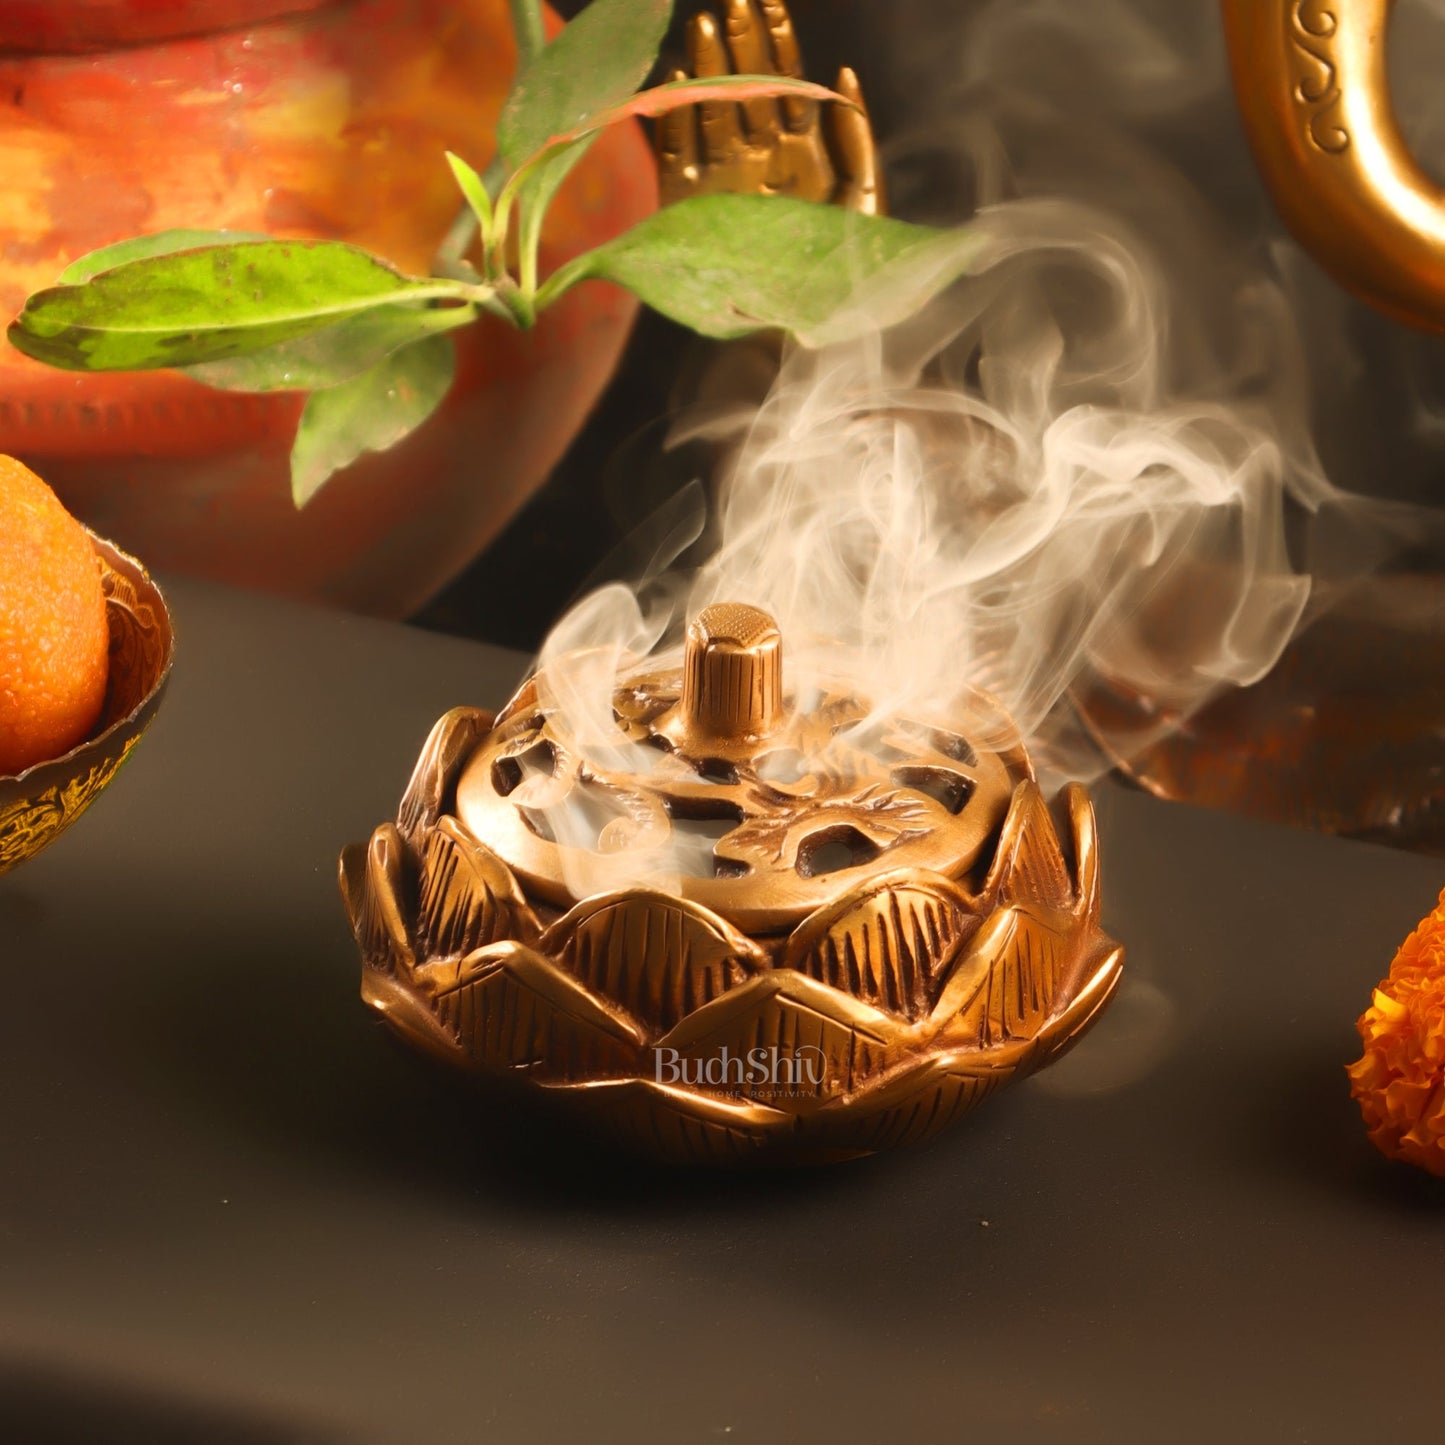 Brass Handcrafted Lotus Design Dhoop Burner | Incense Burner for Home Purification - Budhshiv.com